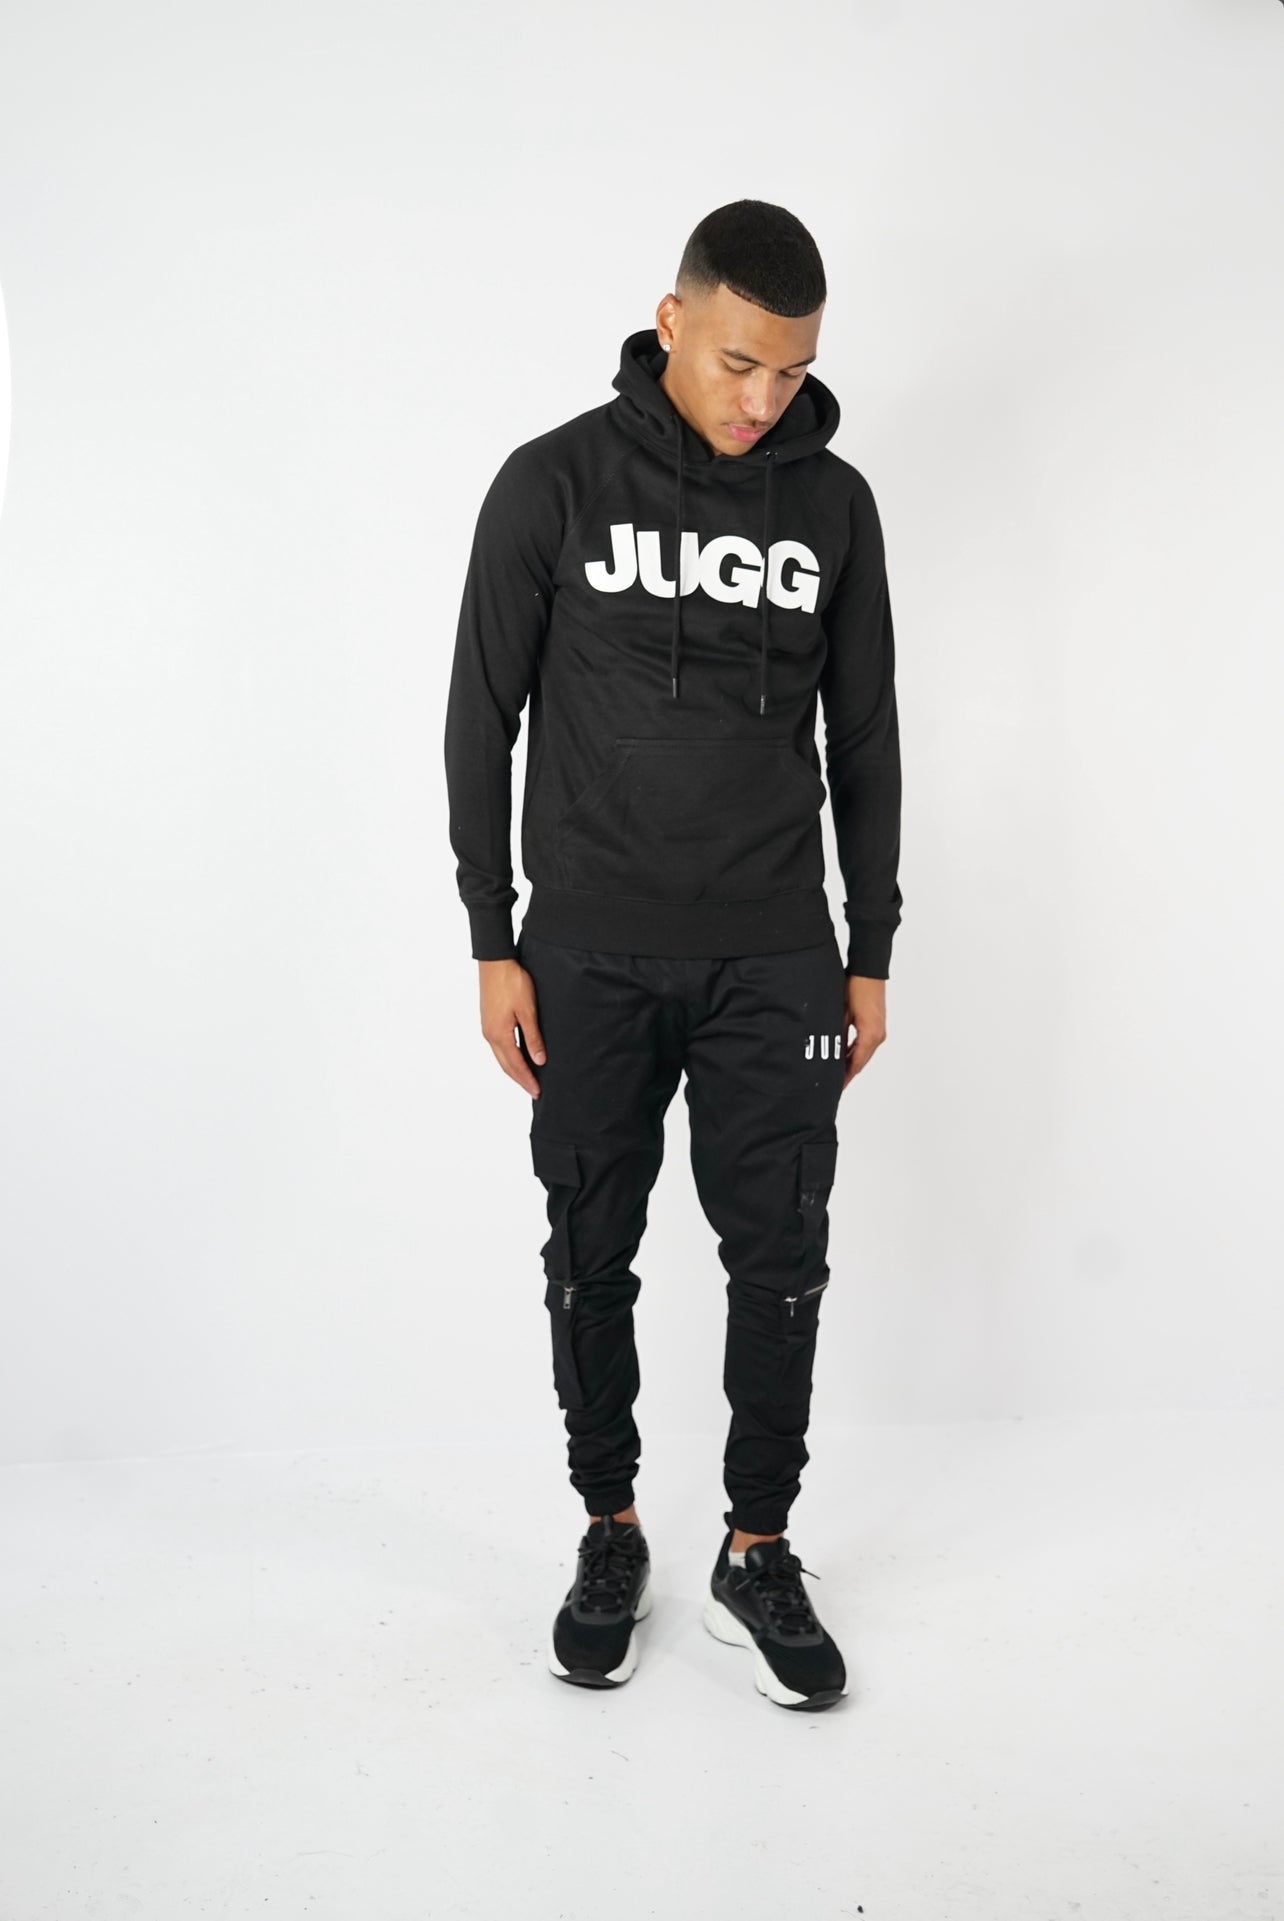 Rubber Enlarged ‘JUGG’ Hoody - Black